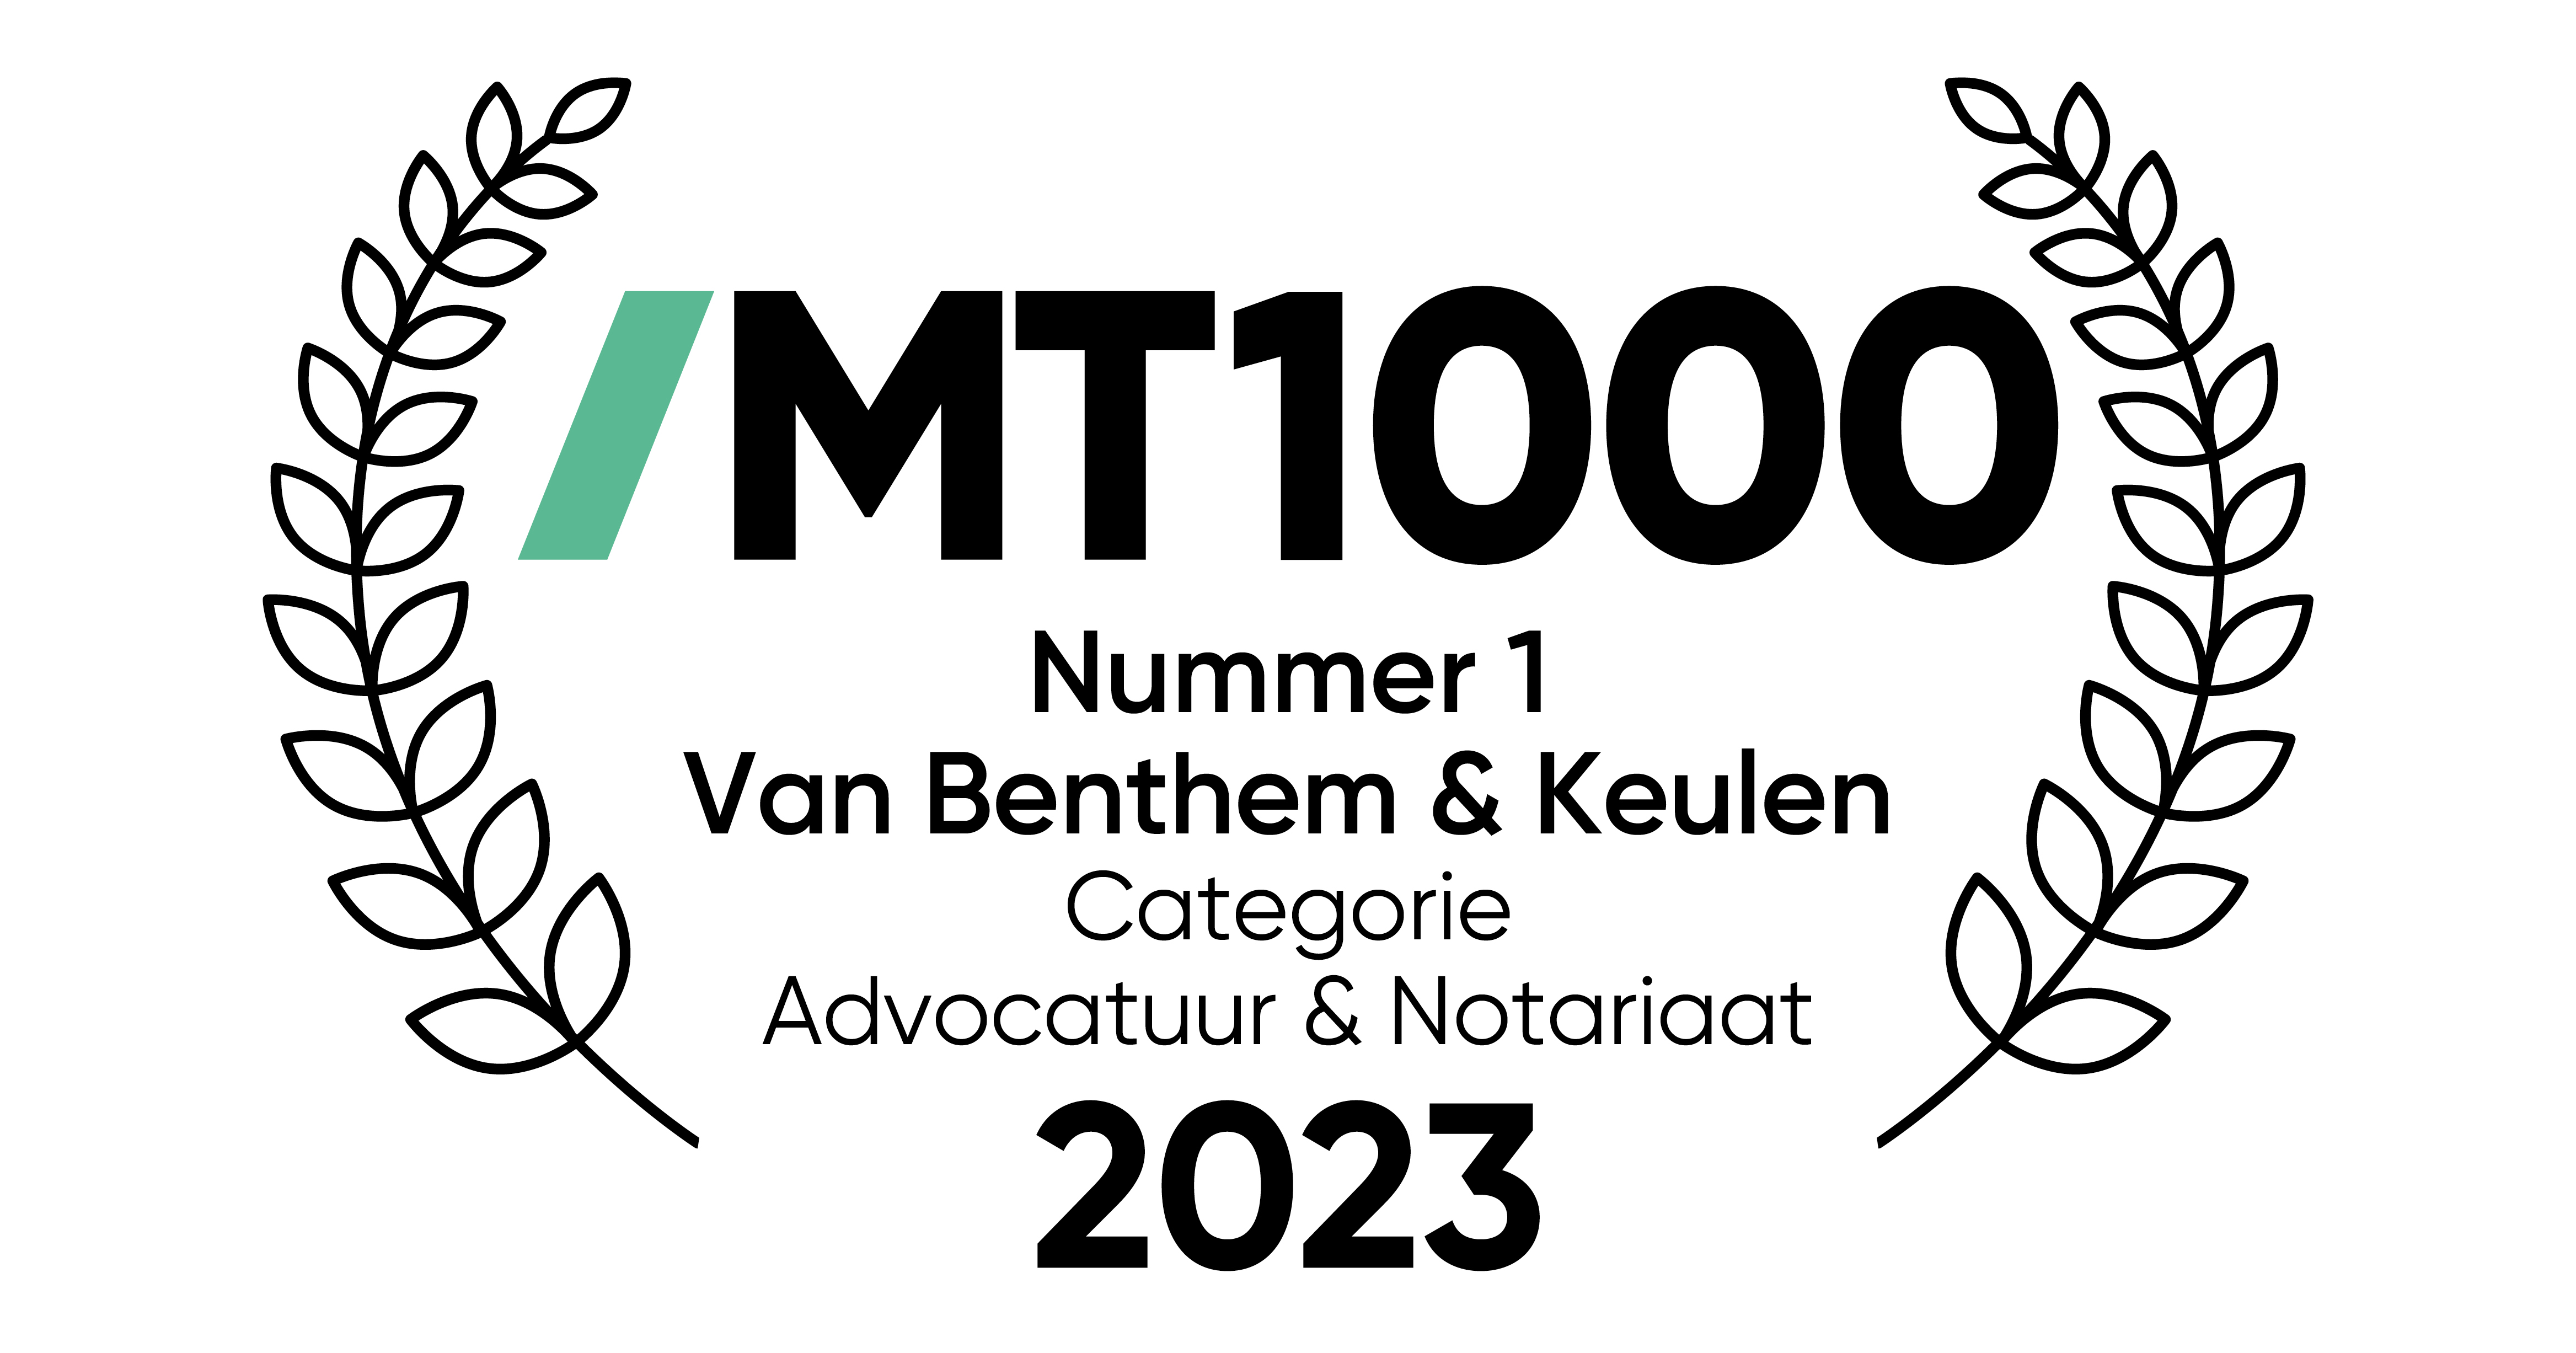 MT1000 Beste juridische dienstverlener 2023